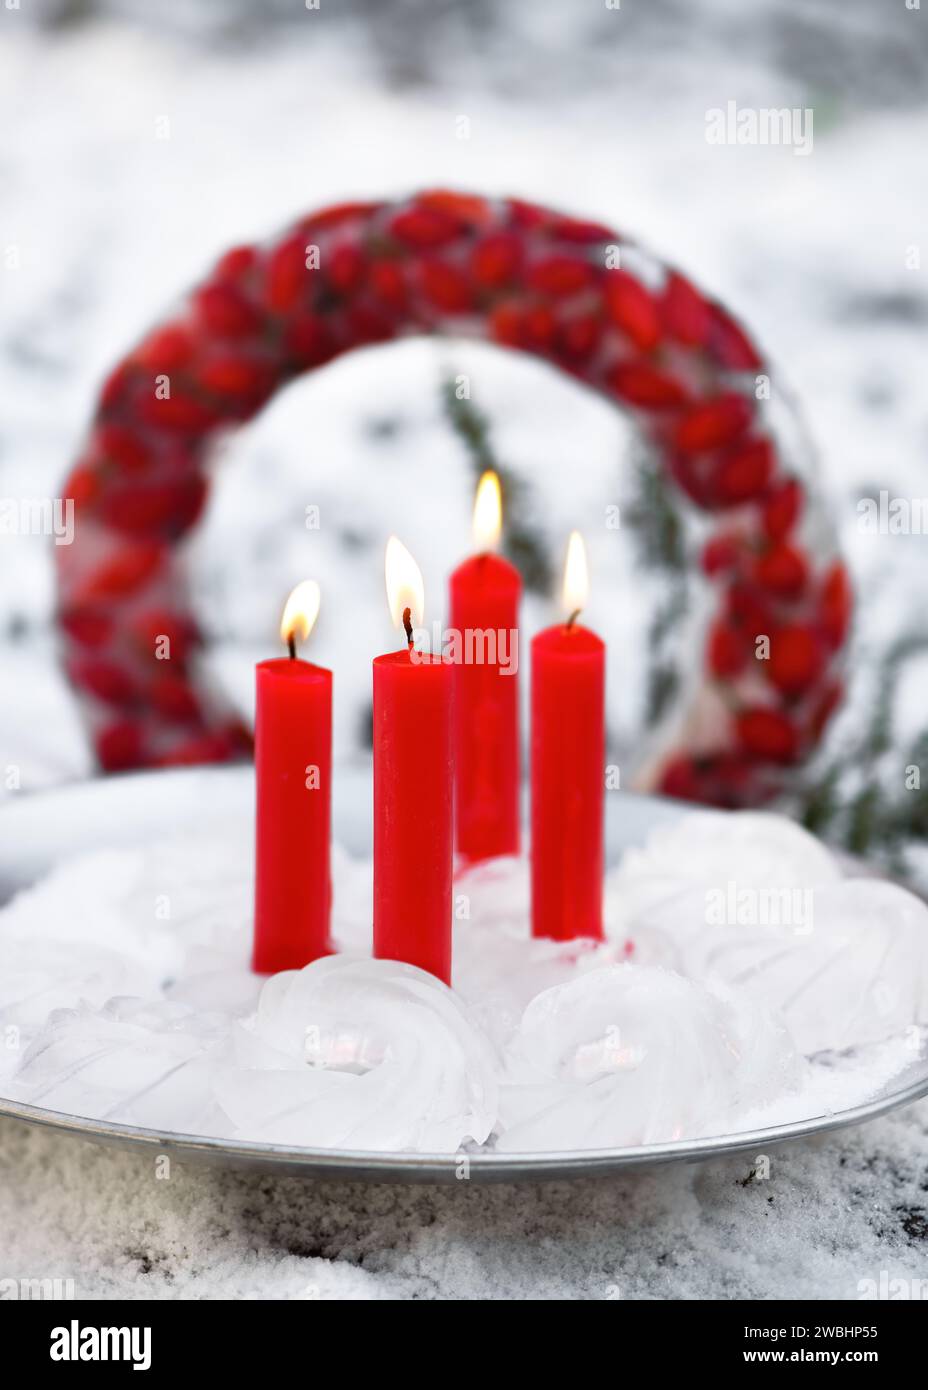 Decoración de hielo de jardín hecha a mano en forma de mini Bundts, con cuatro velas rojas ardientes en placa de metal rústico delante de la corona de Navidad congelada. Foto de stock